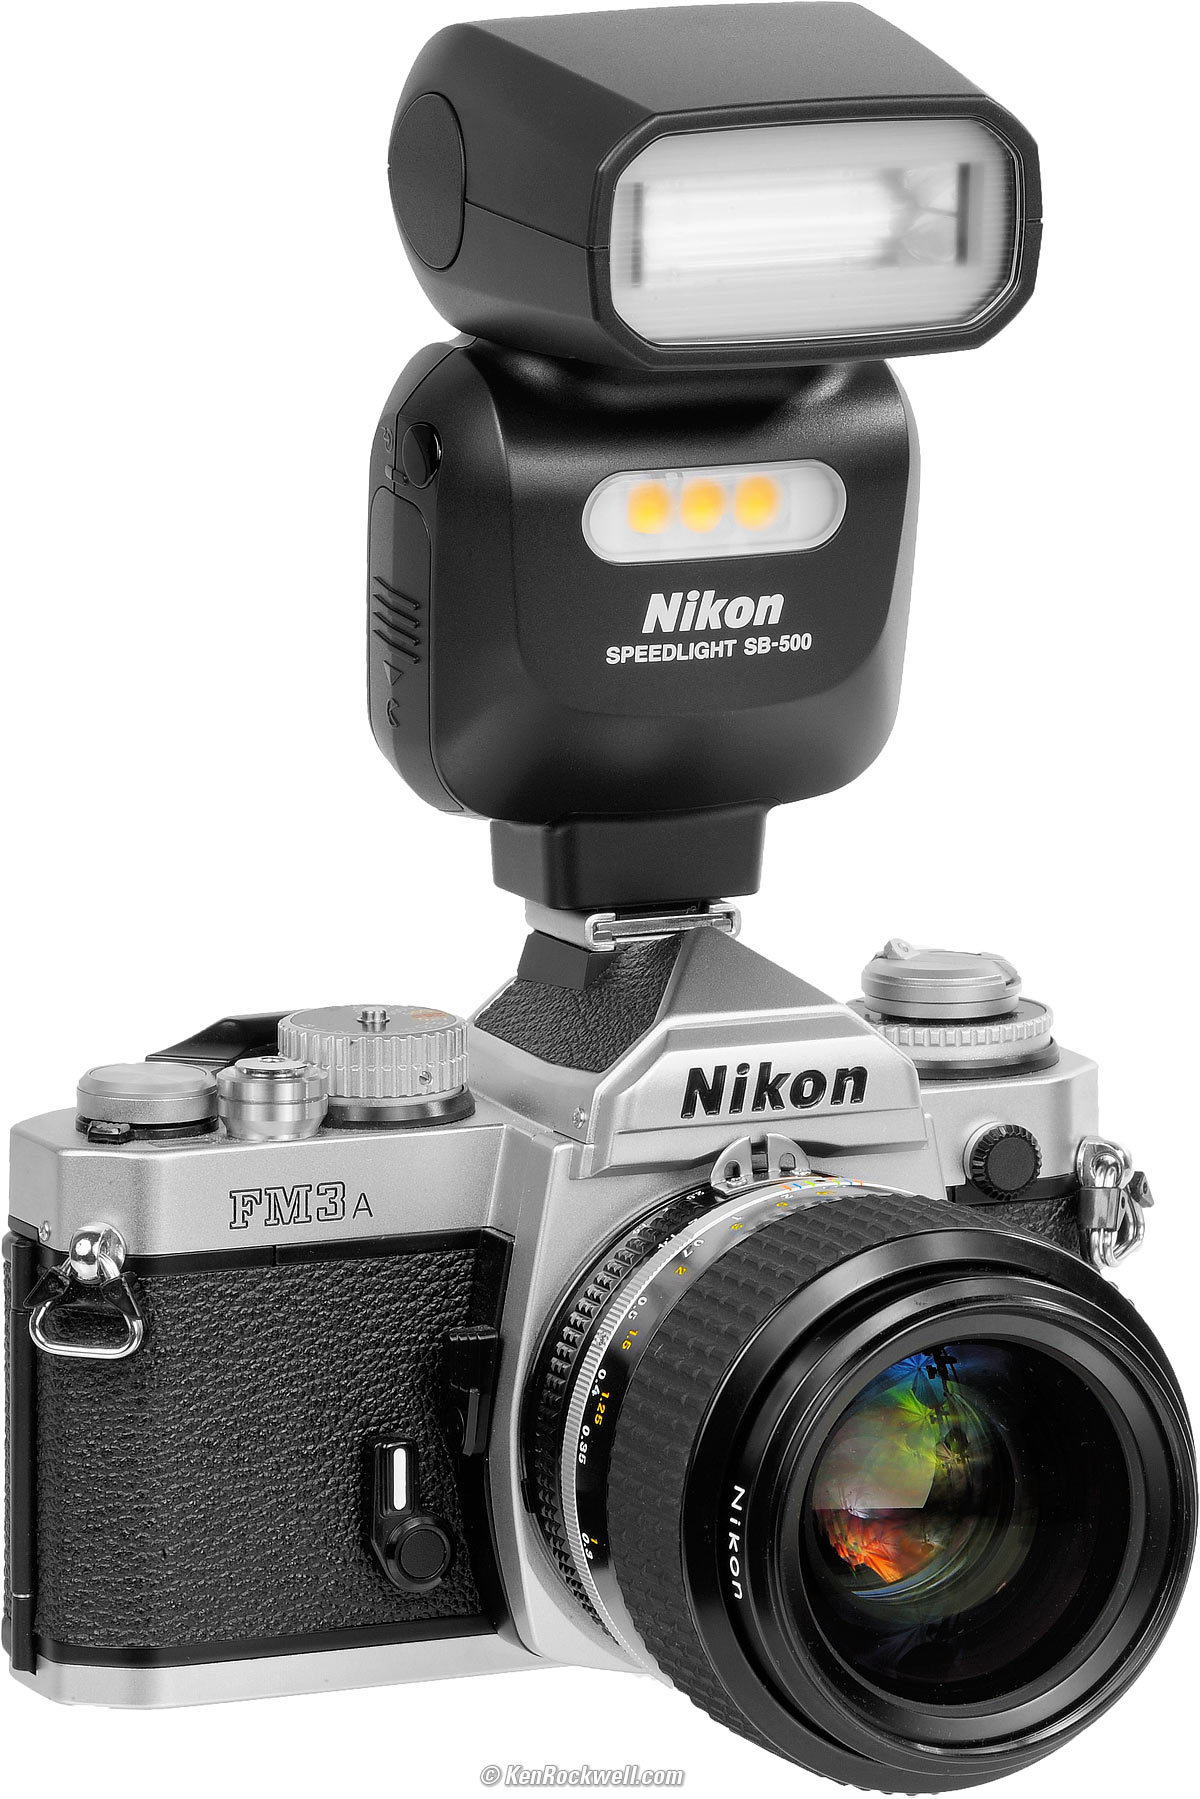 Nikon SB-500 Flash Review by Ken Rockwell